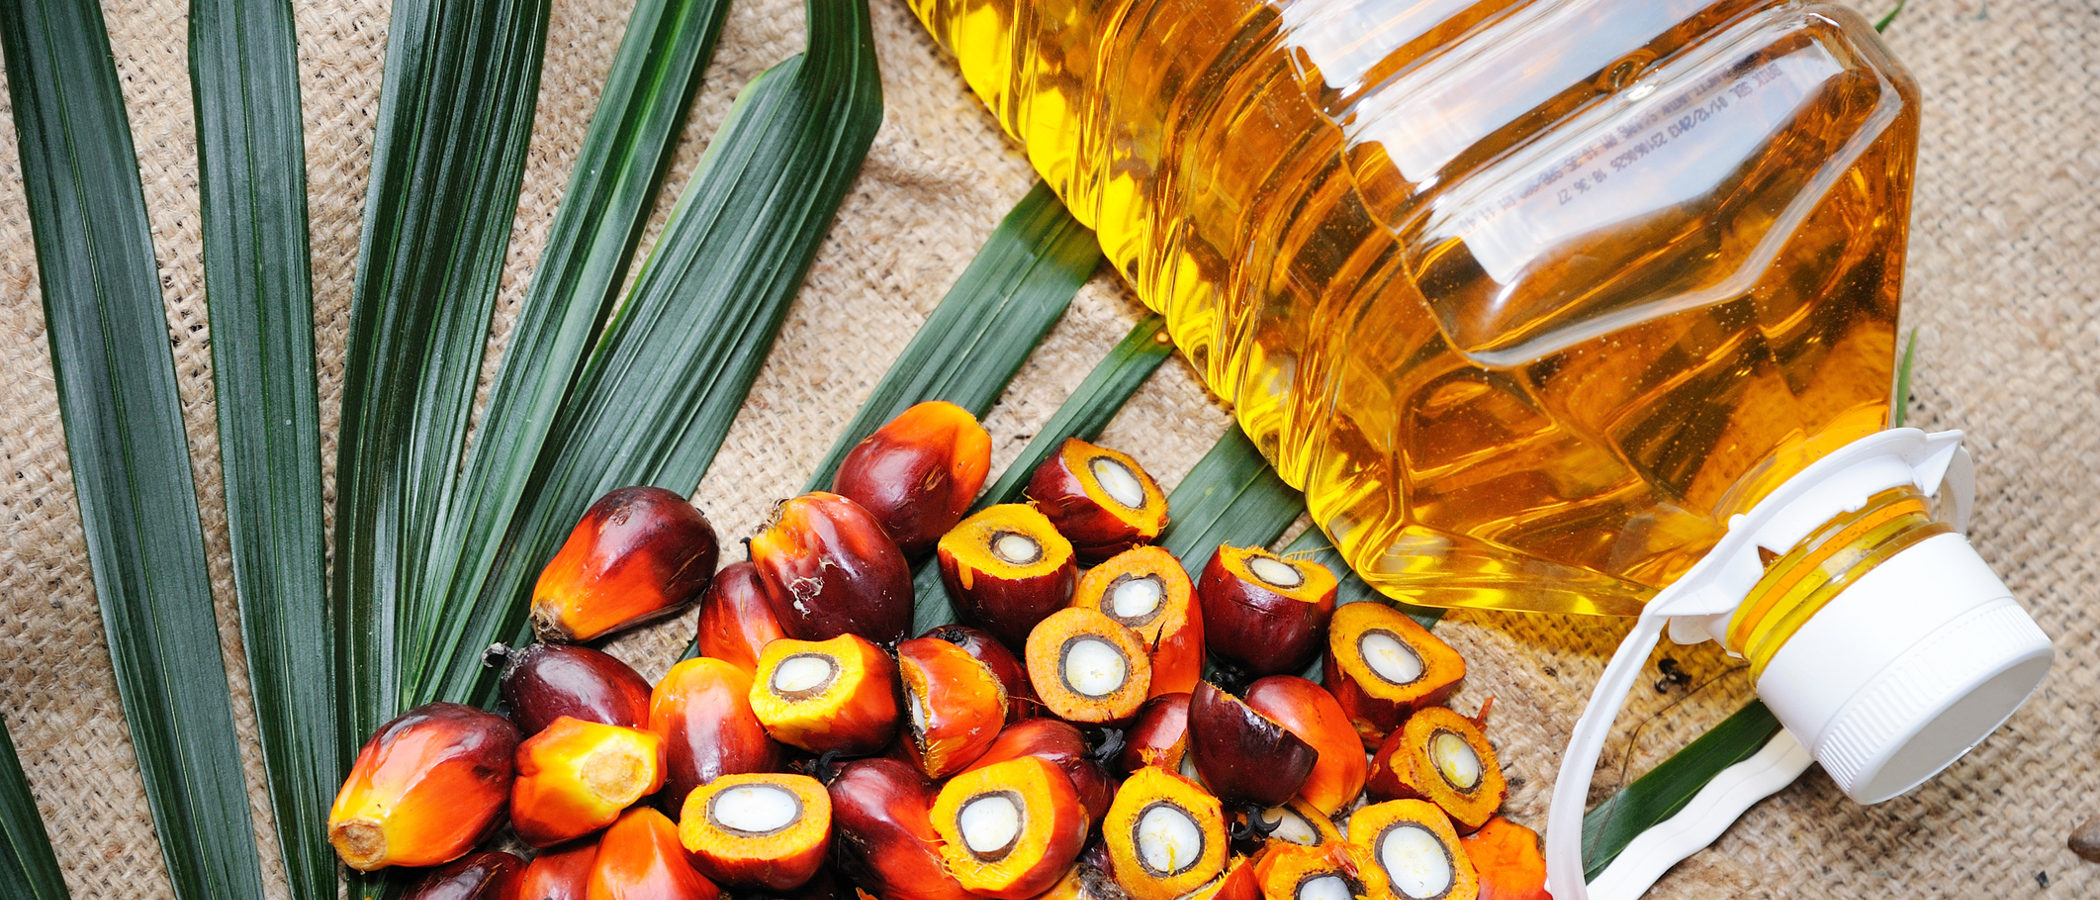 El aceite de palma en la alimentación de los niños, ¿qué efectos tiene?